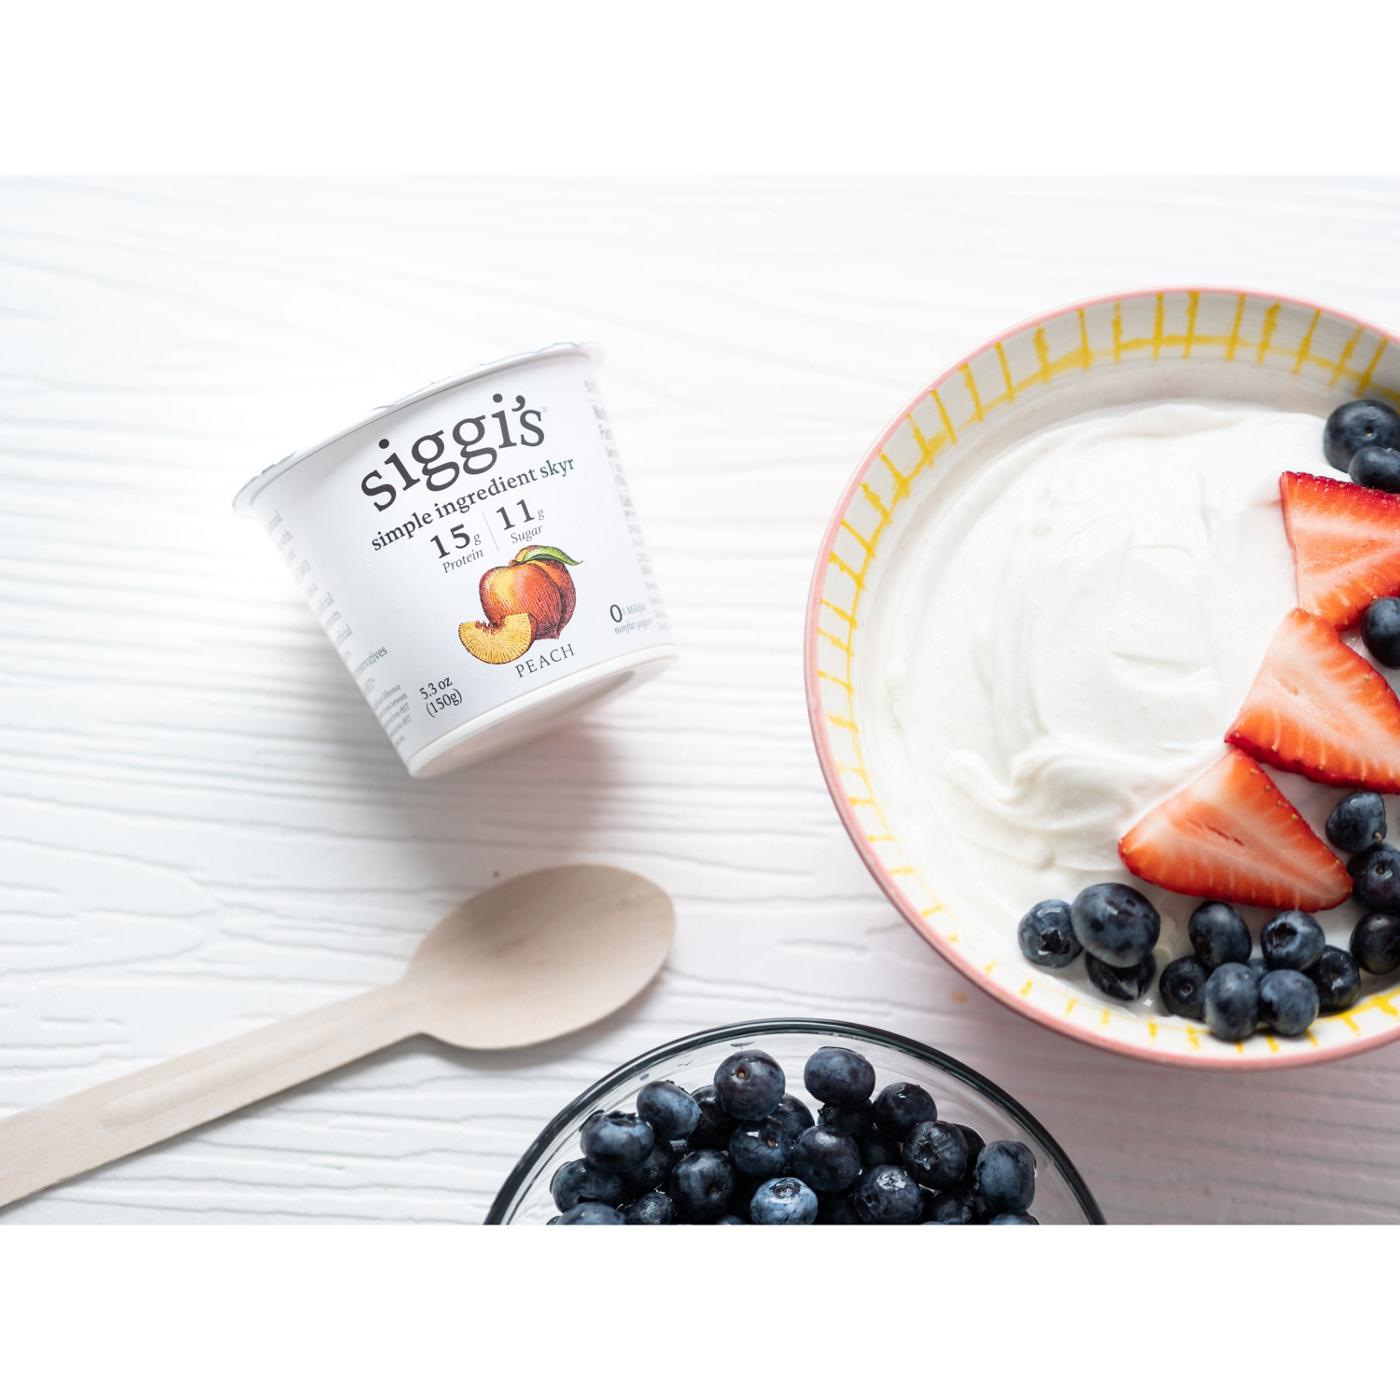 Siggi's 0% Non-Fat Strained Skyr Peach Yogurt; image 2 of 2